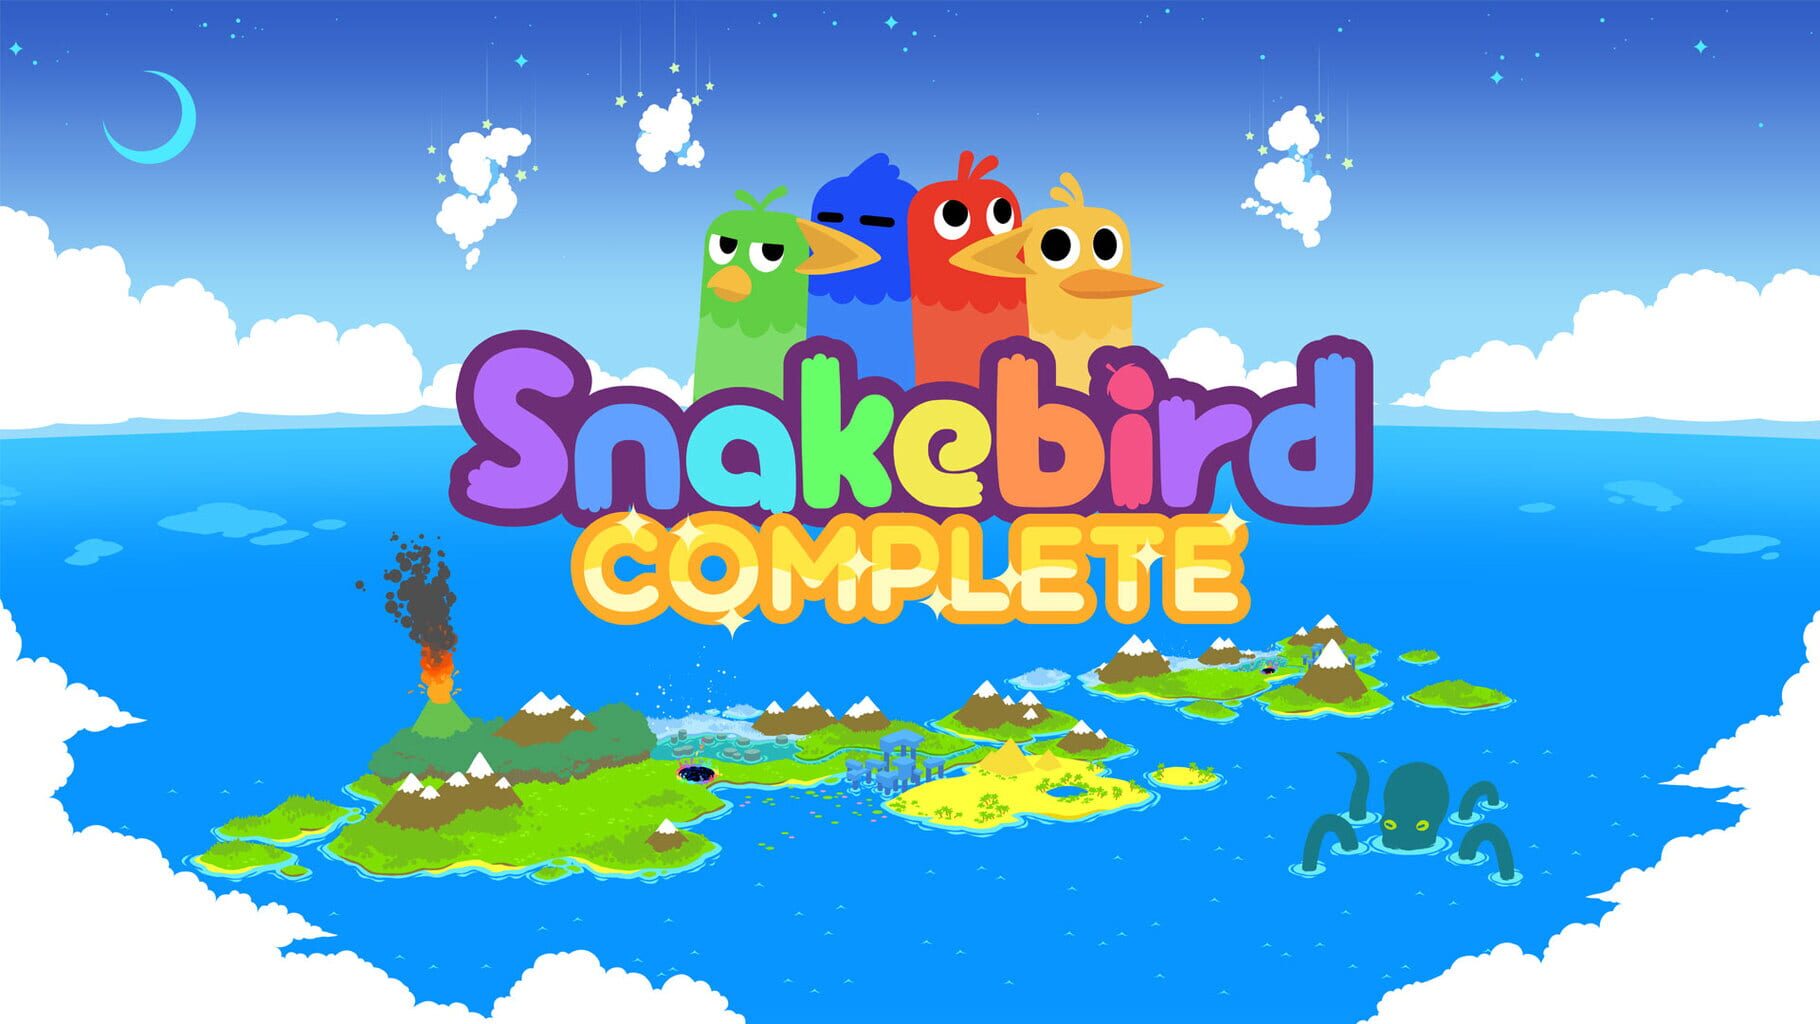 Snakebird Complete artwork